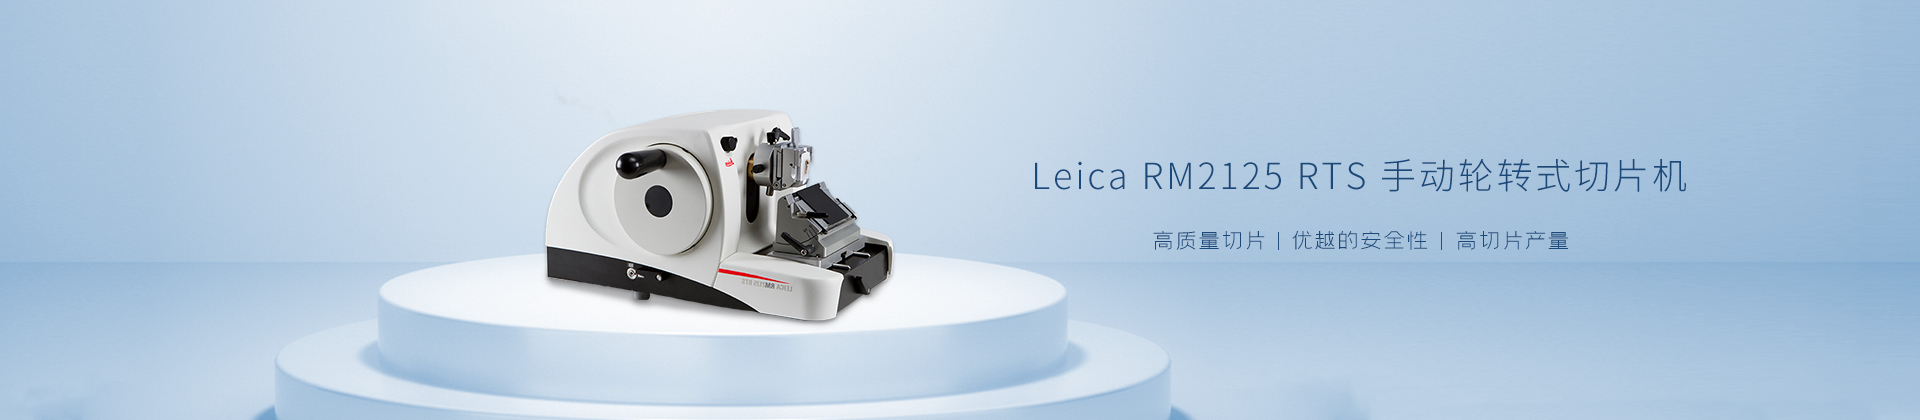 Leica RM2125 RTS 手动轮转式切片机